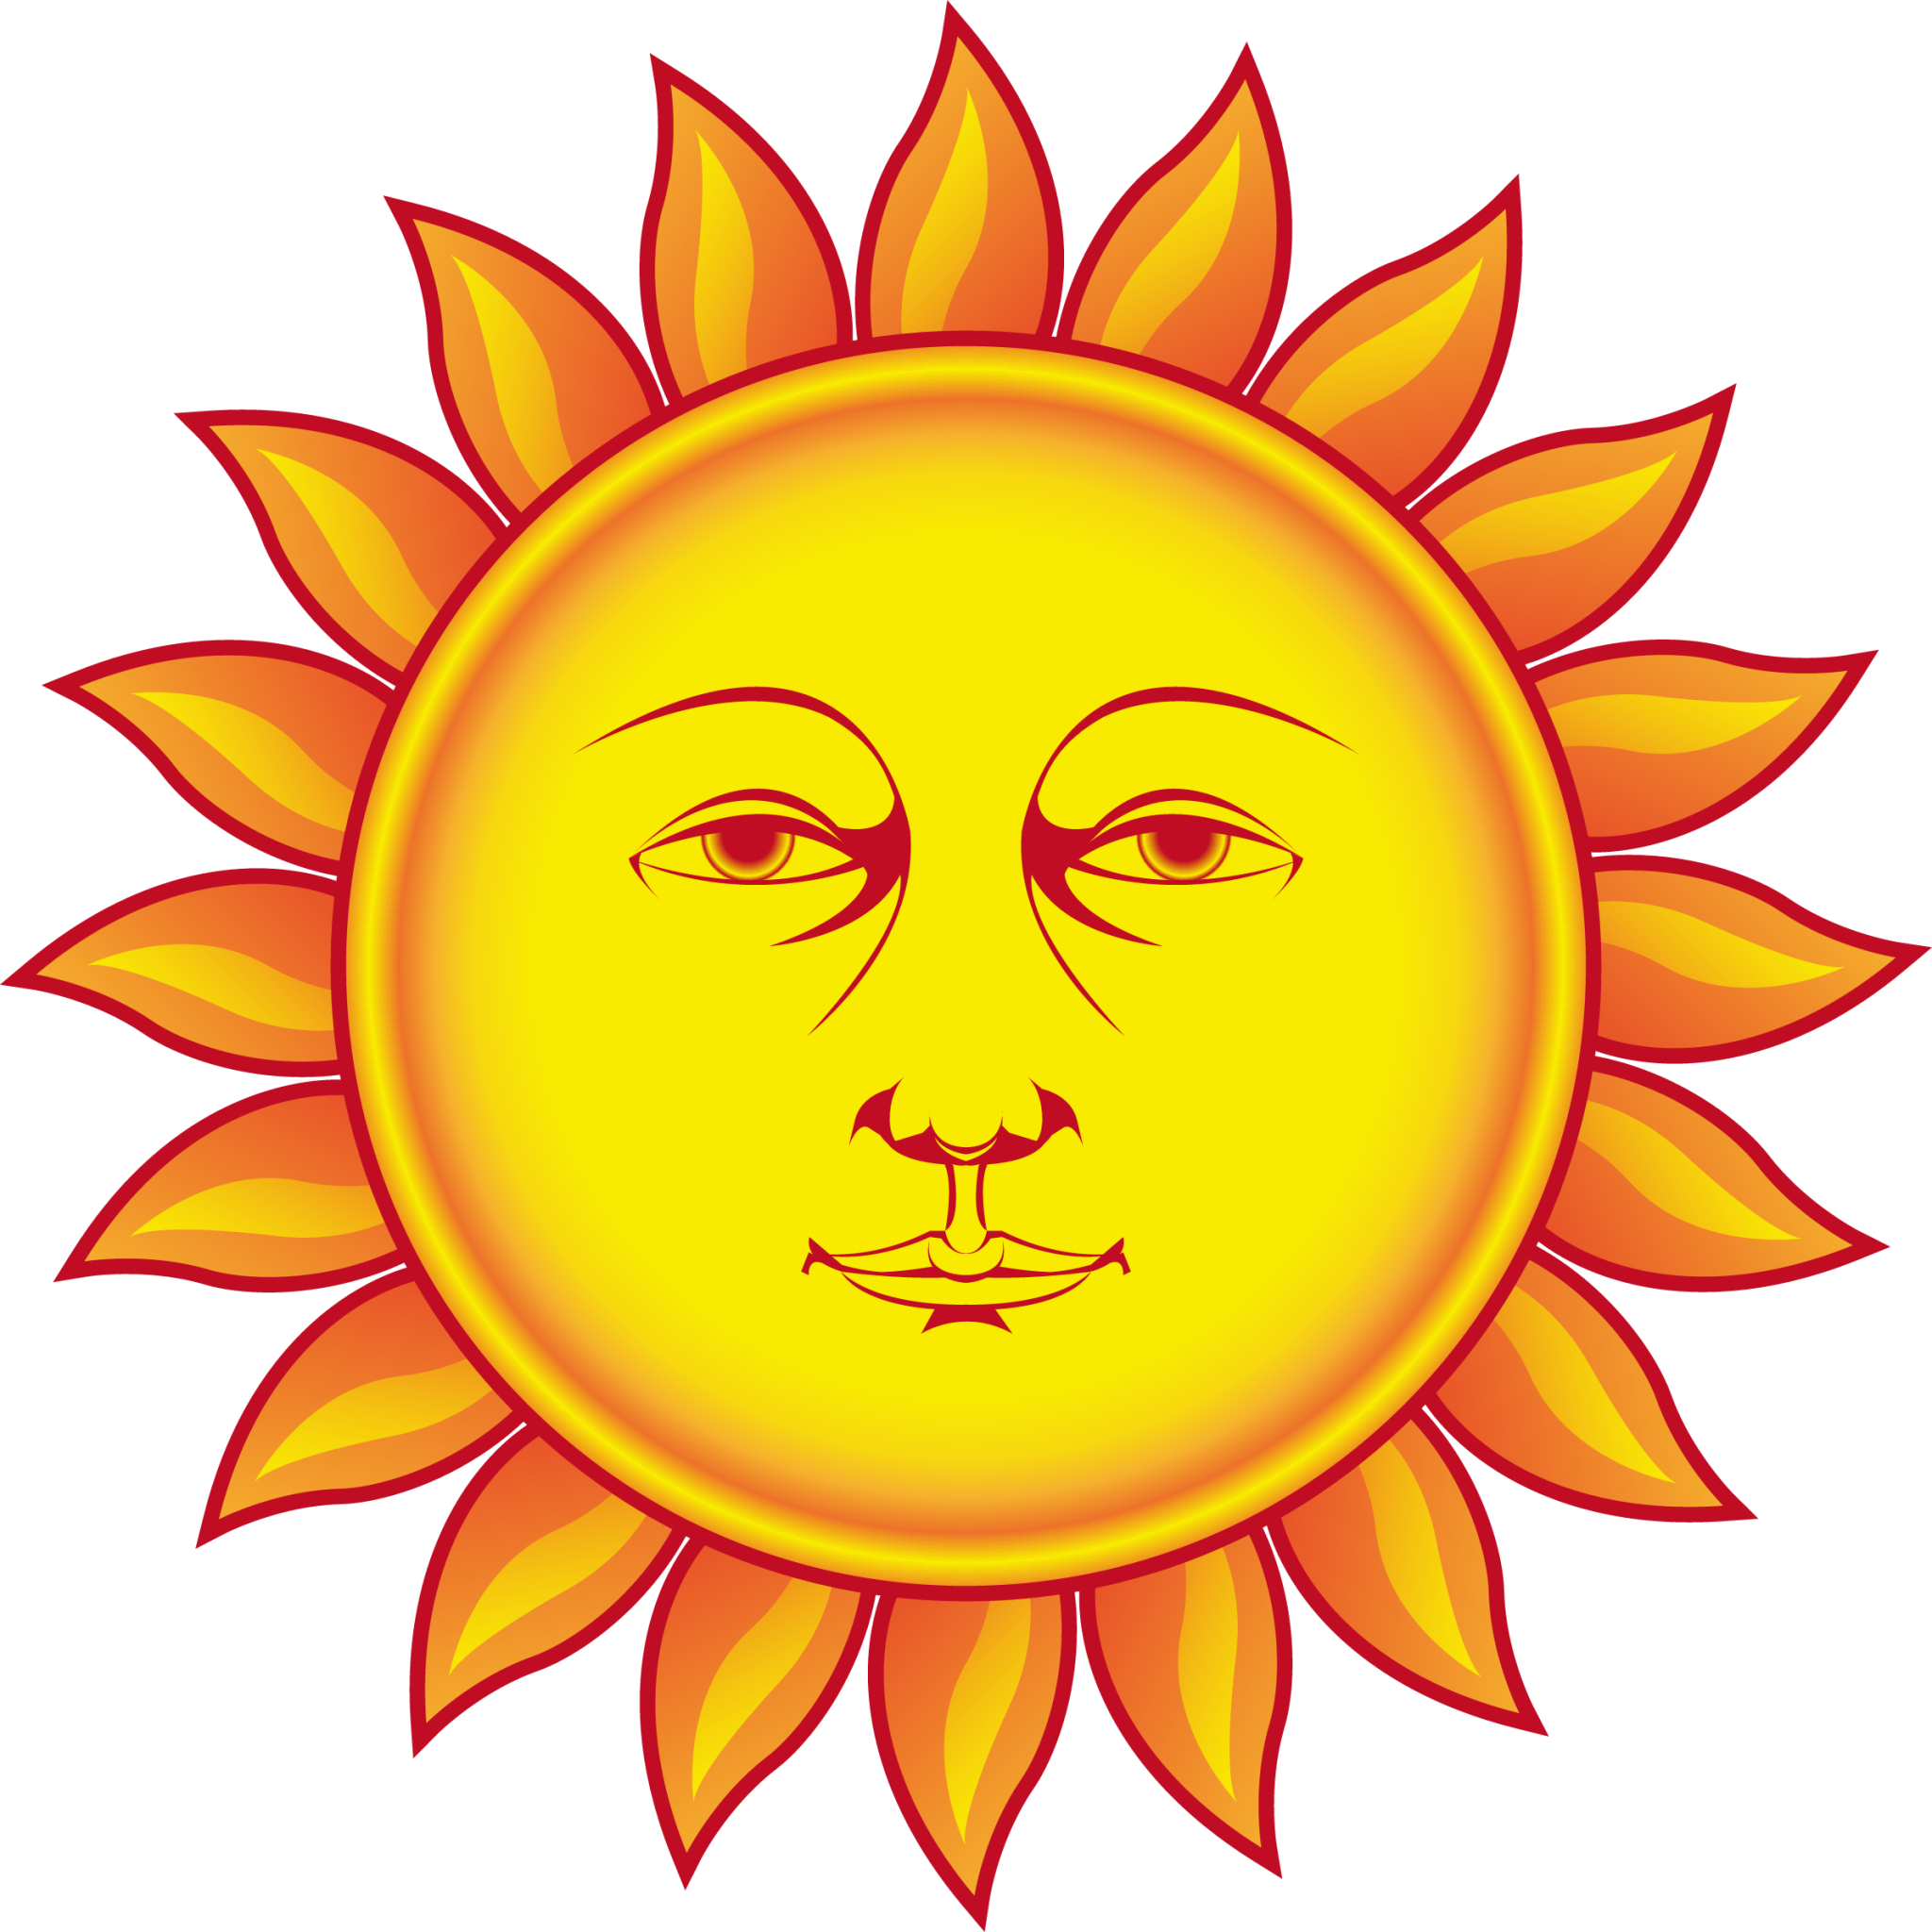 sun with face 2 emoji